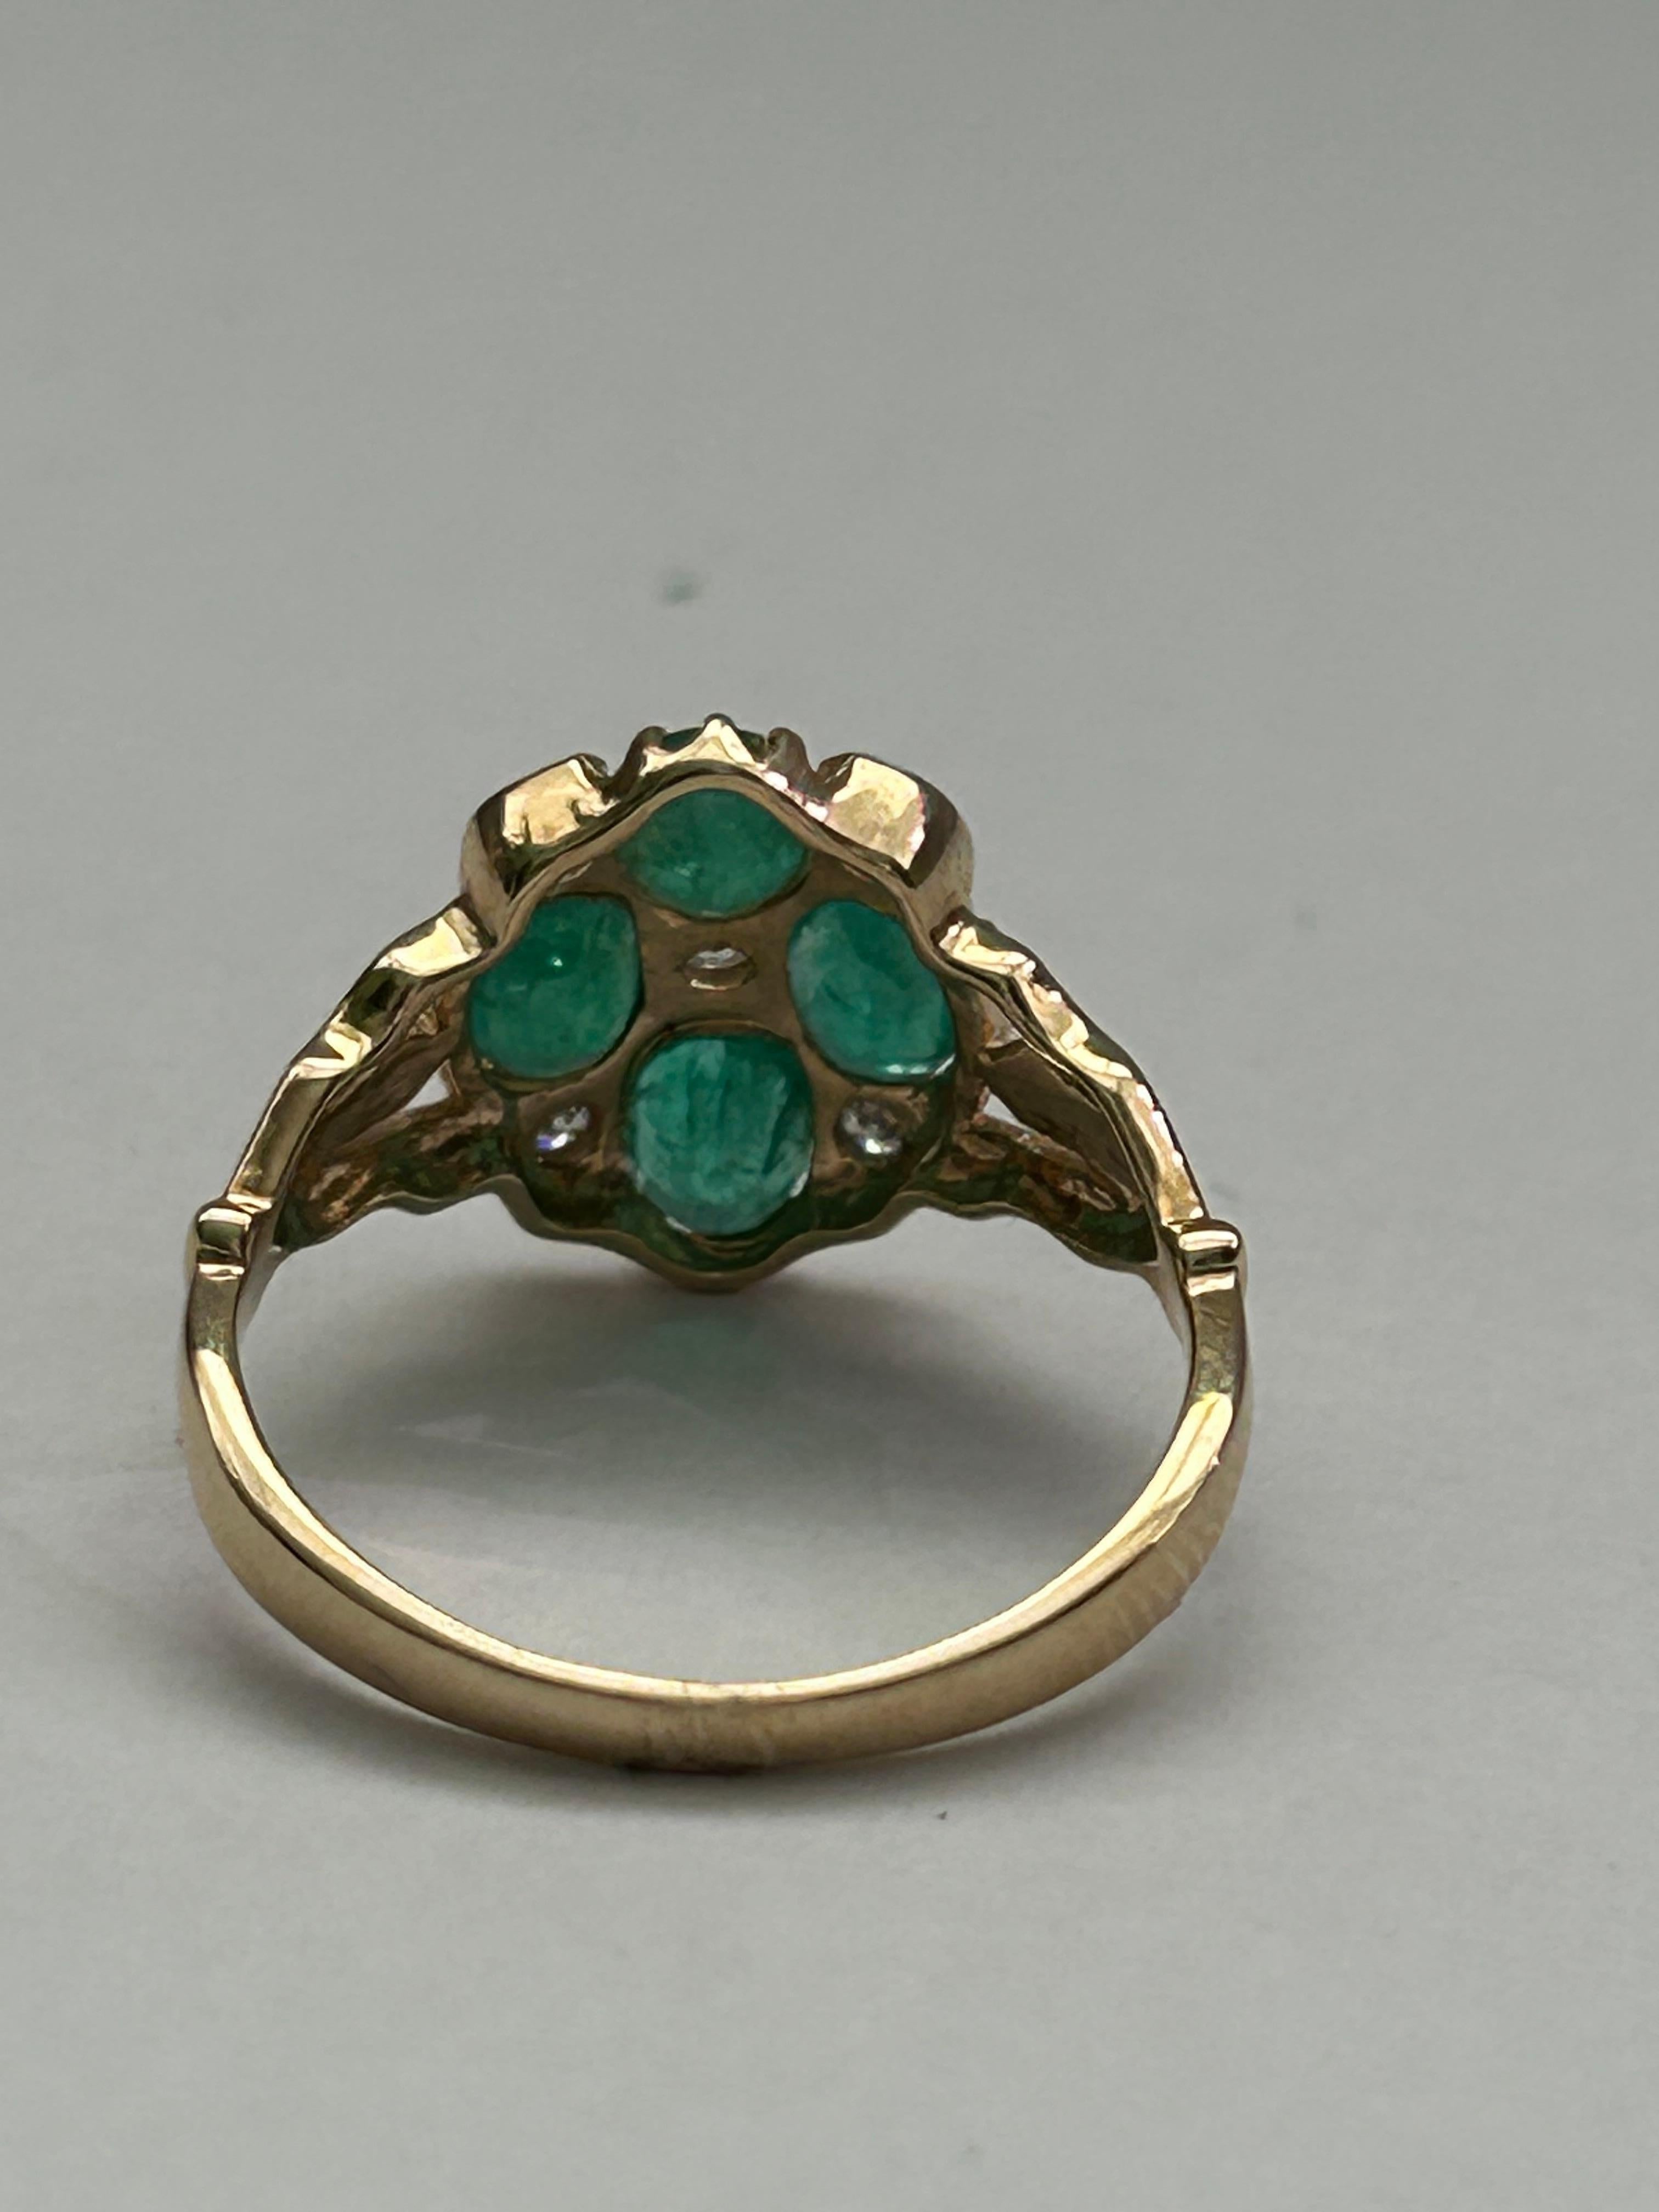 Dieser wunderschöne Smaragd- und Diamant-Cluster-Ring wird in US Größe 6.75 / UK Größe N geliefert.  Smaragde sind est 1,5ct und Diamanten est 0,12ct, der Ring ist in 9ct Gelbgold gefasst. Ein wahrer Statement-Ring.